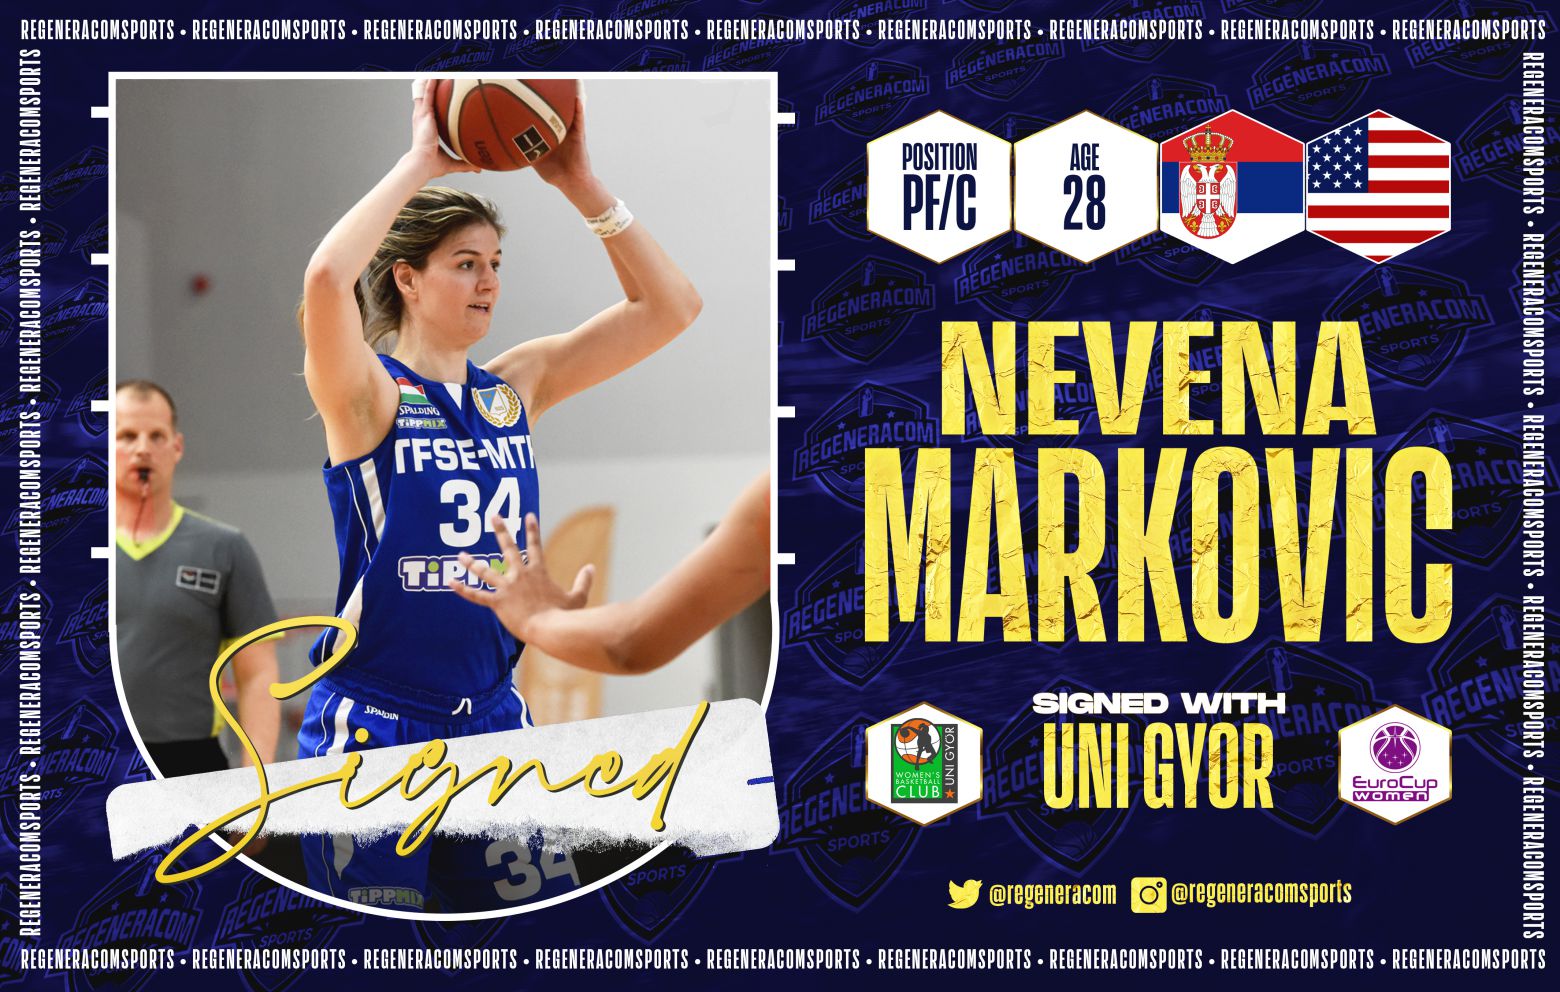 NEVENA MARKOVIC ha firmado en Hungría con Uni Györ para la temporada 2021/22